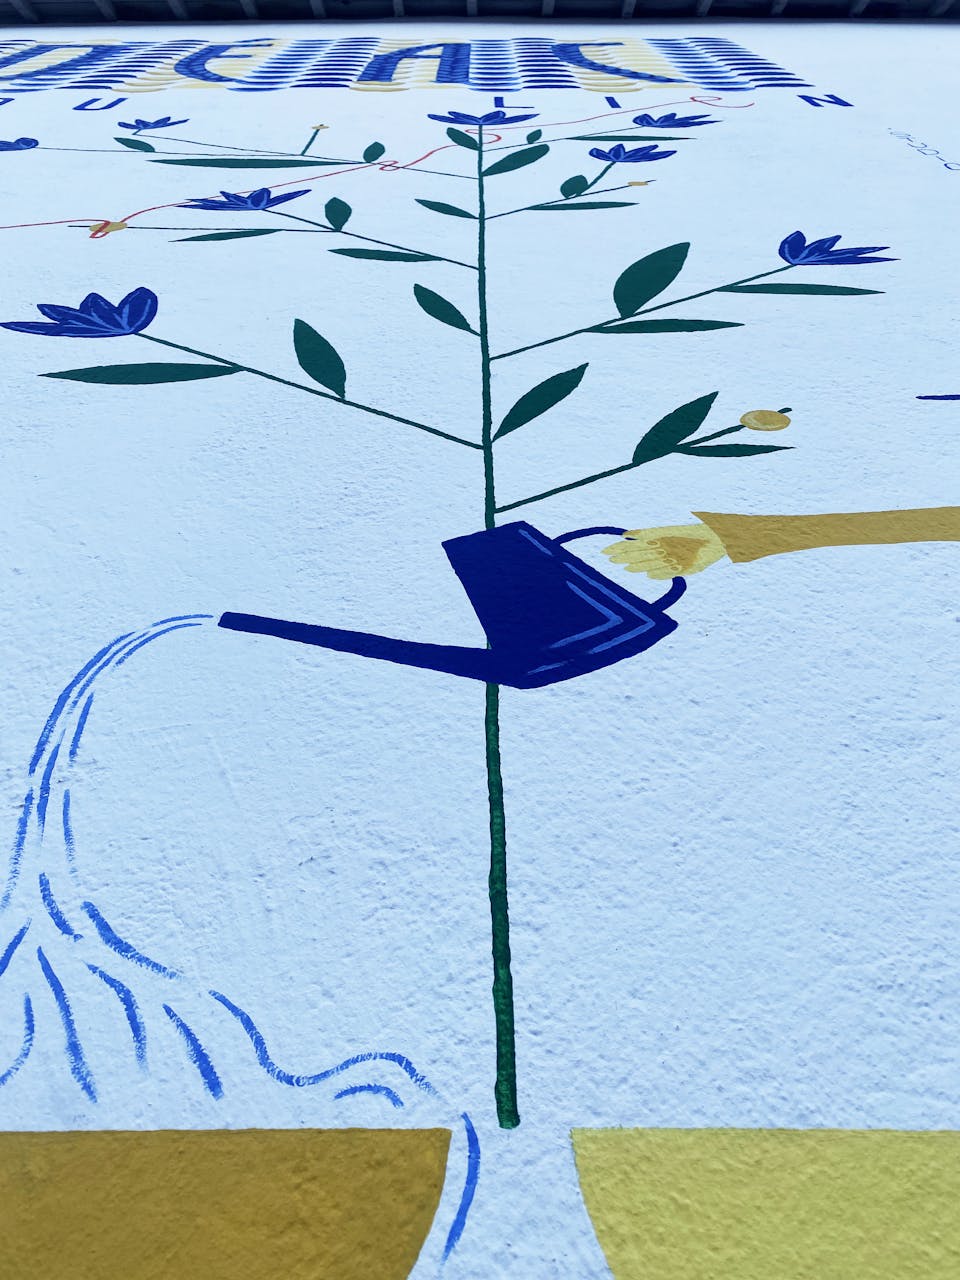 Détails de la fresque murale "Tisser du lien", illustrant une main arrosant une plante.